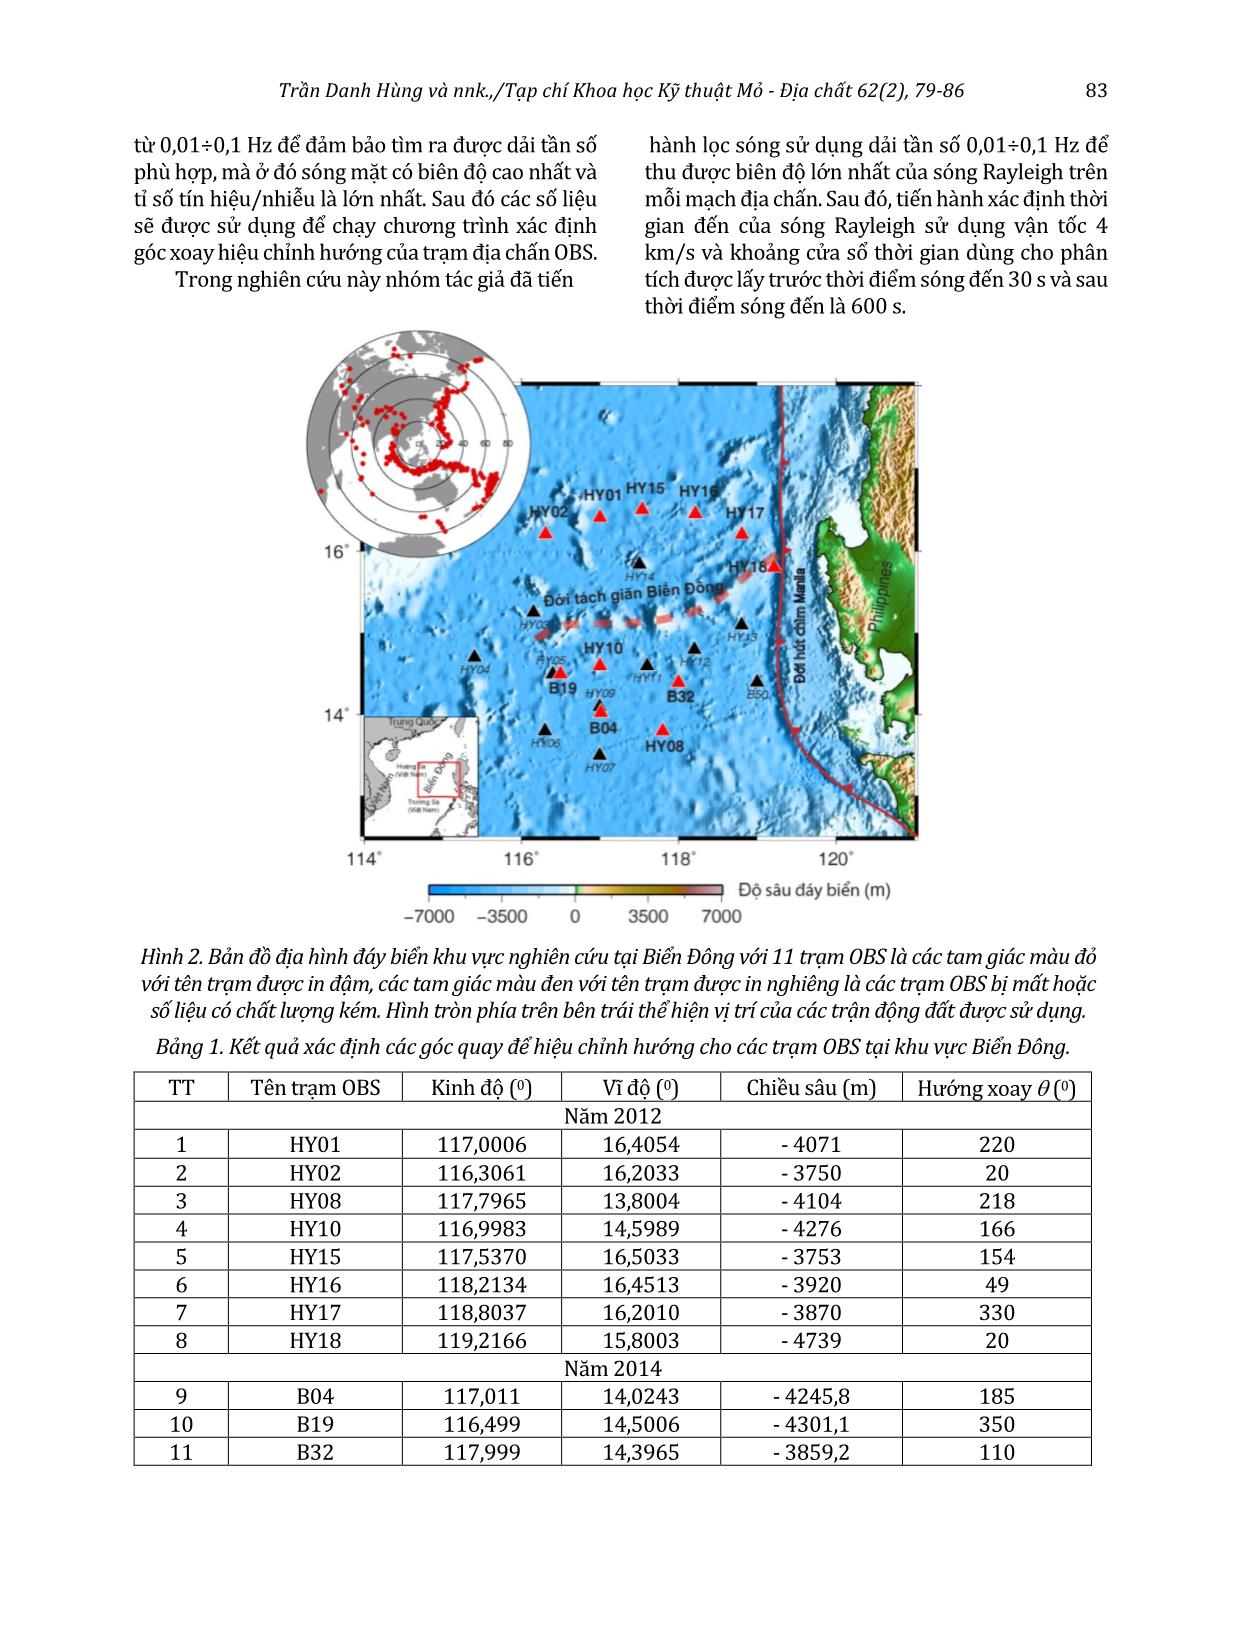 Nghiên cứu sử dụng sóng địa chấn trong định hướng cho các trạm địa chấn dưới đáy biển trang 5